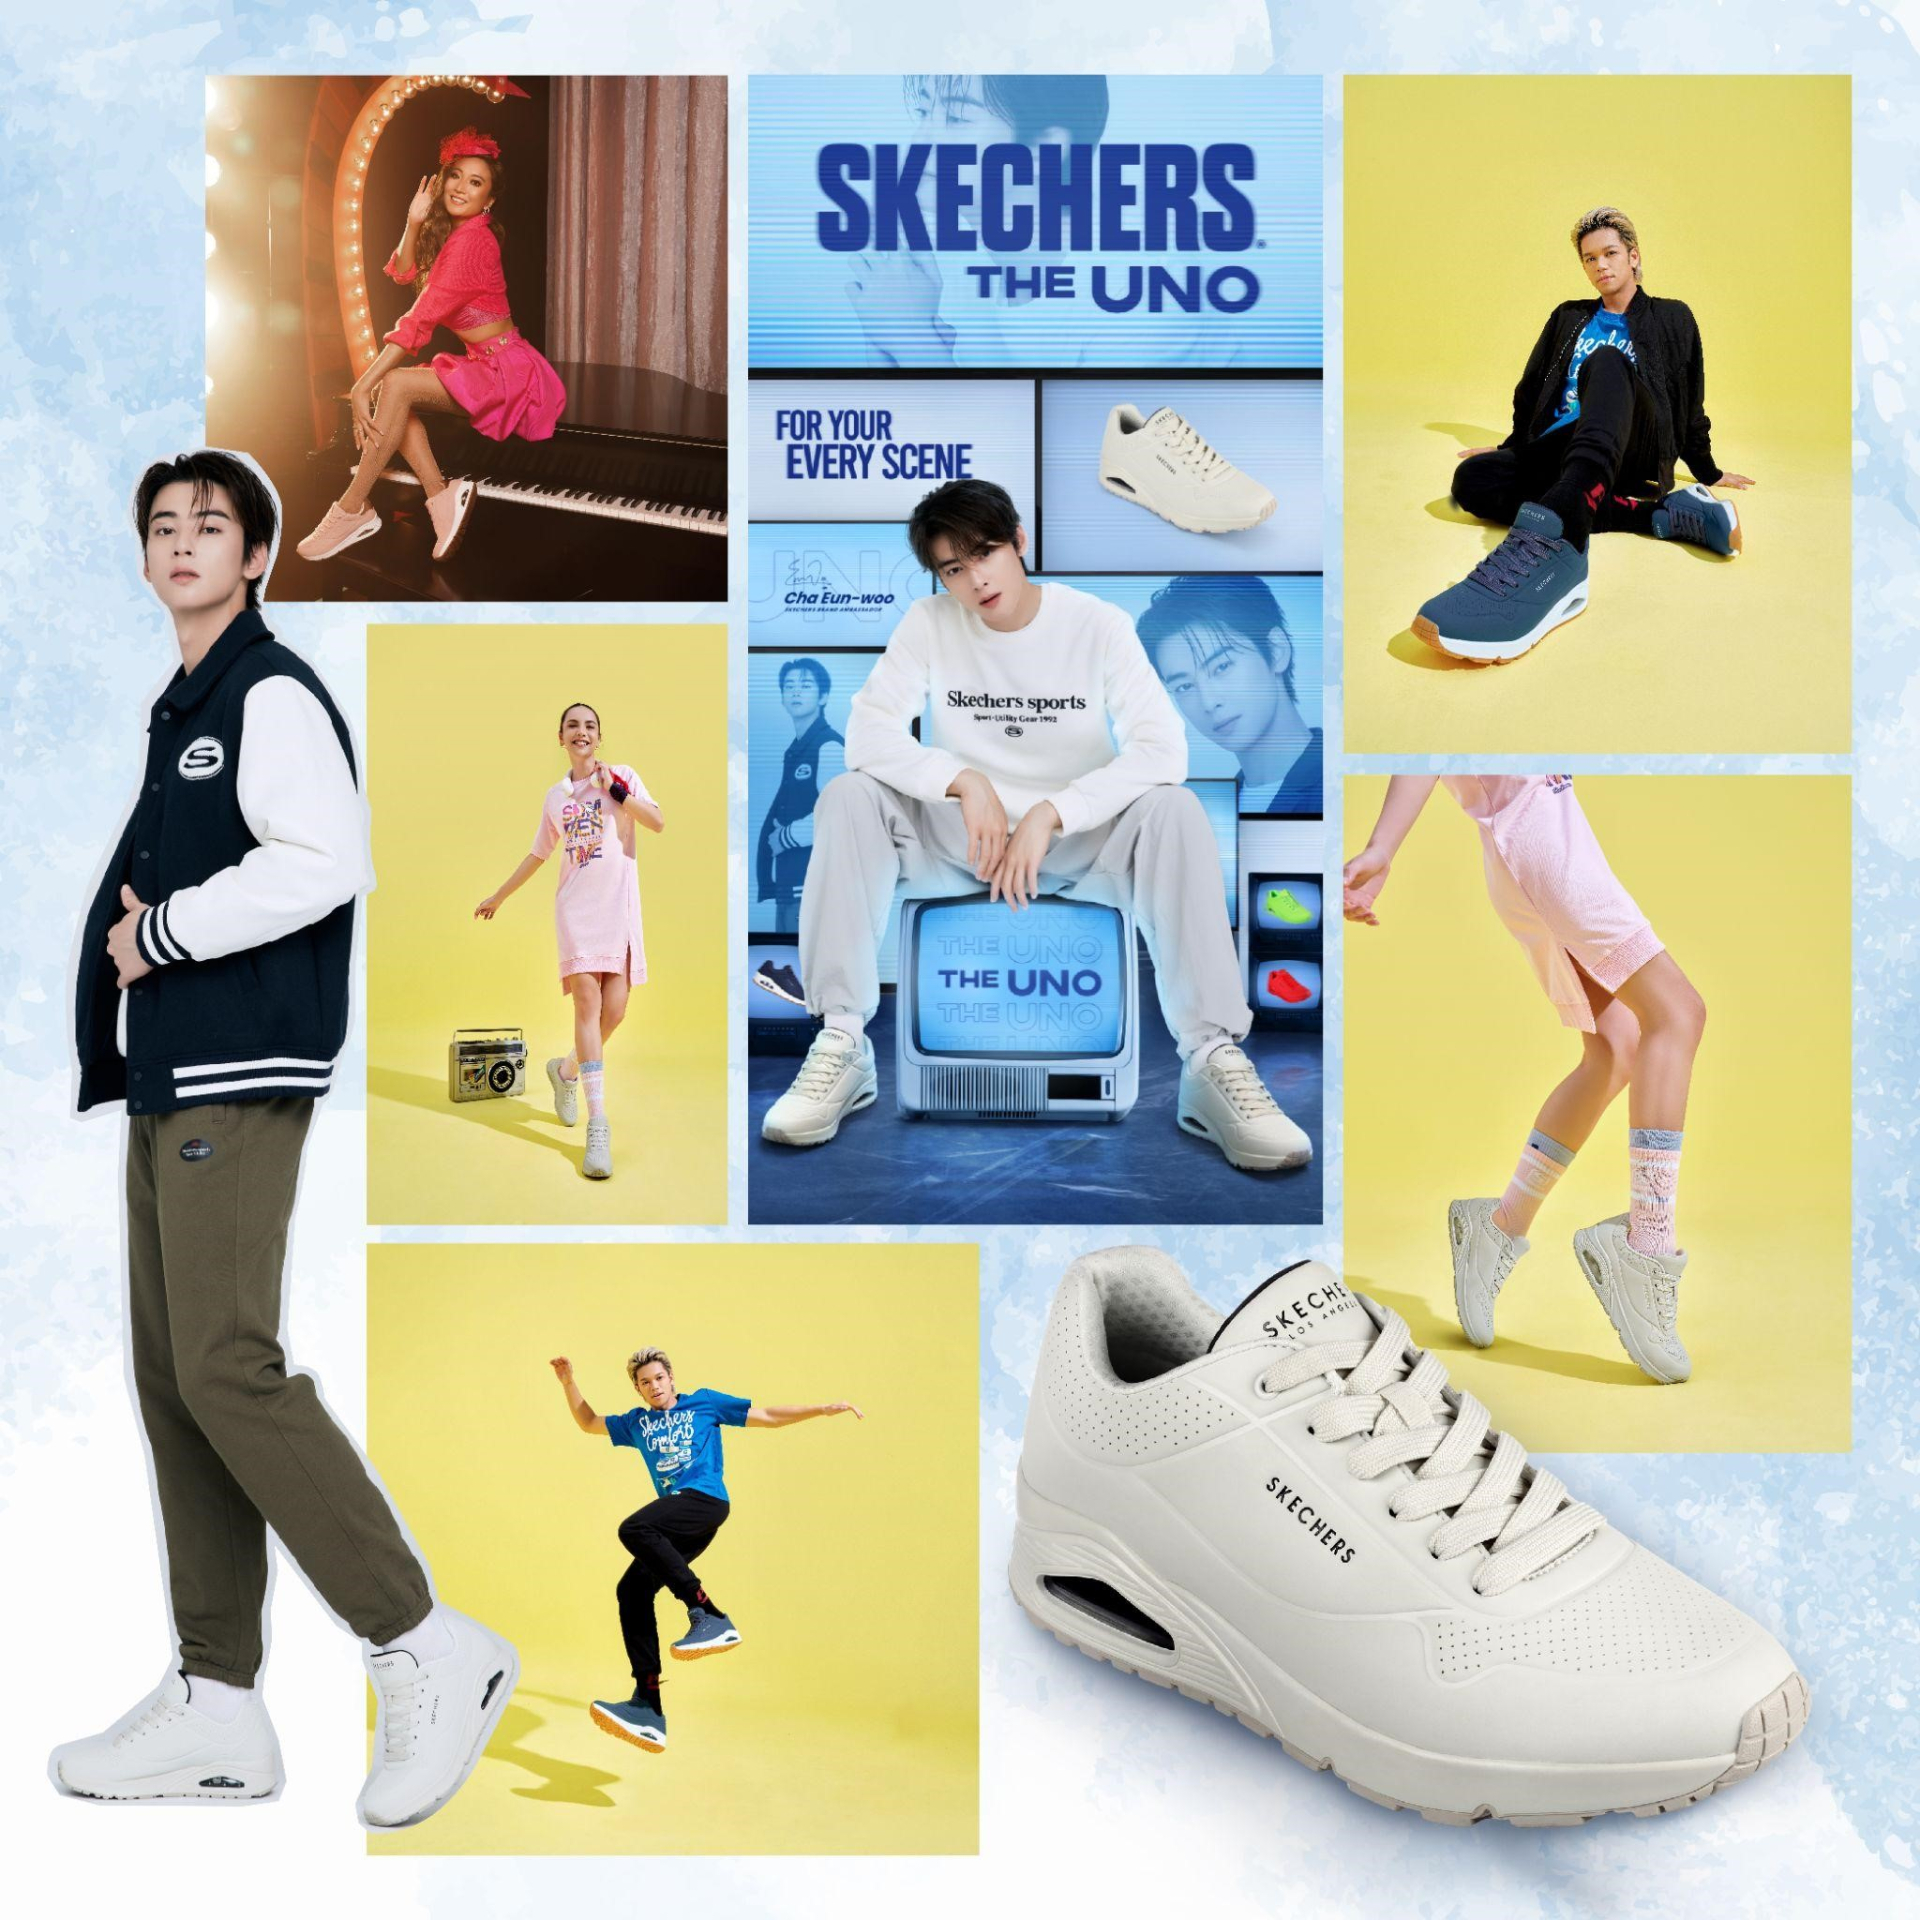 Skechers “trình làng” bộ sưu tập giày UNO mới với 7 sắc màu cực trẻ trung - ảnh 4